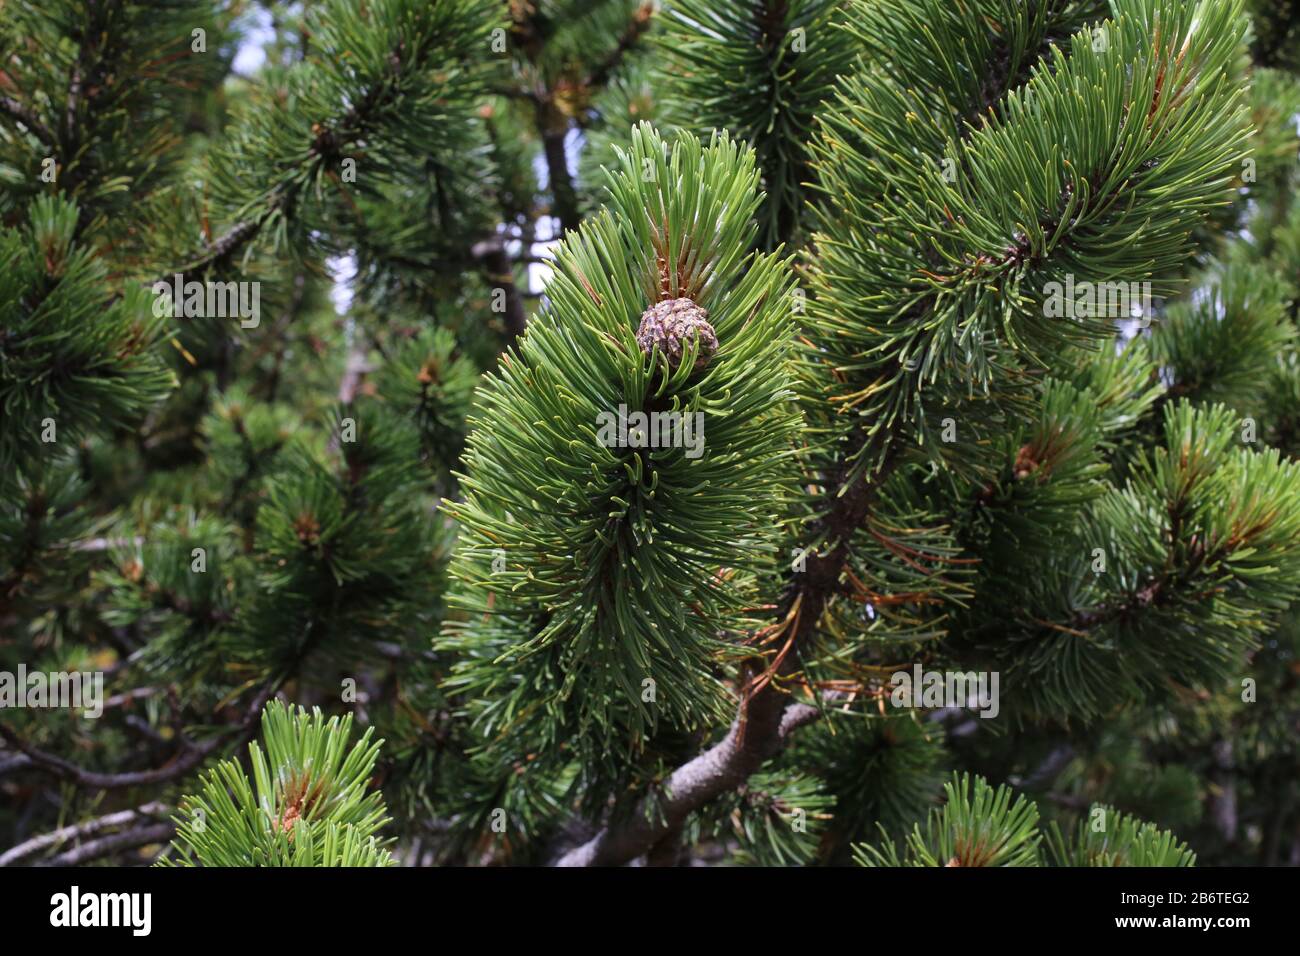 pinus mugo - wild plant im sommer erschossen stockfotografie - alamy